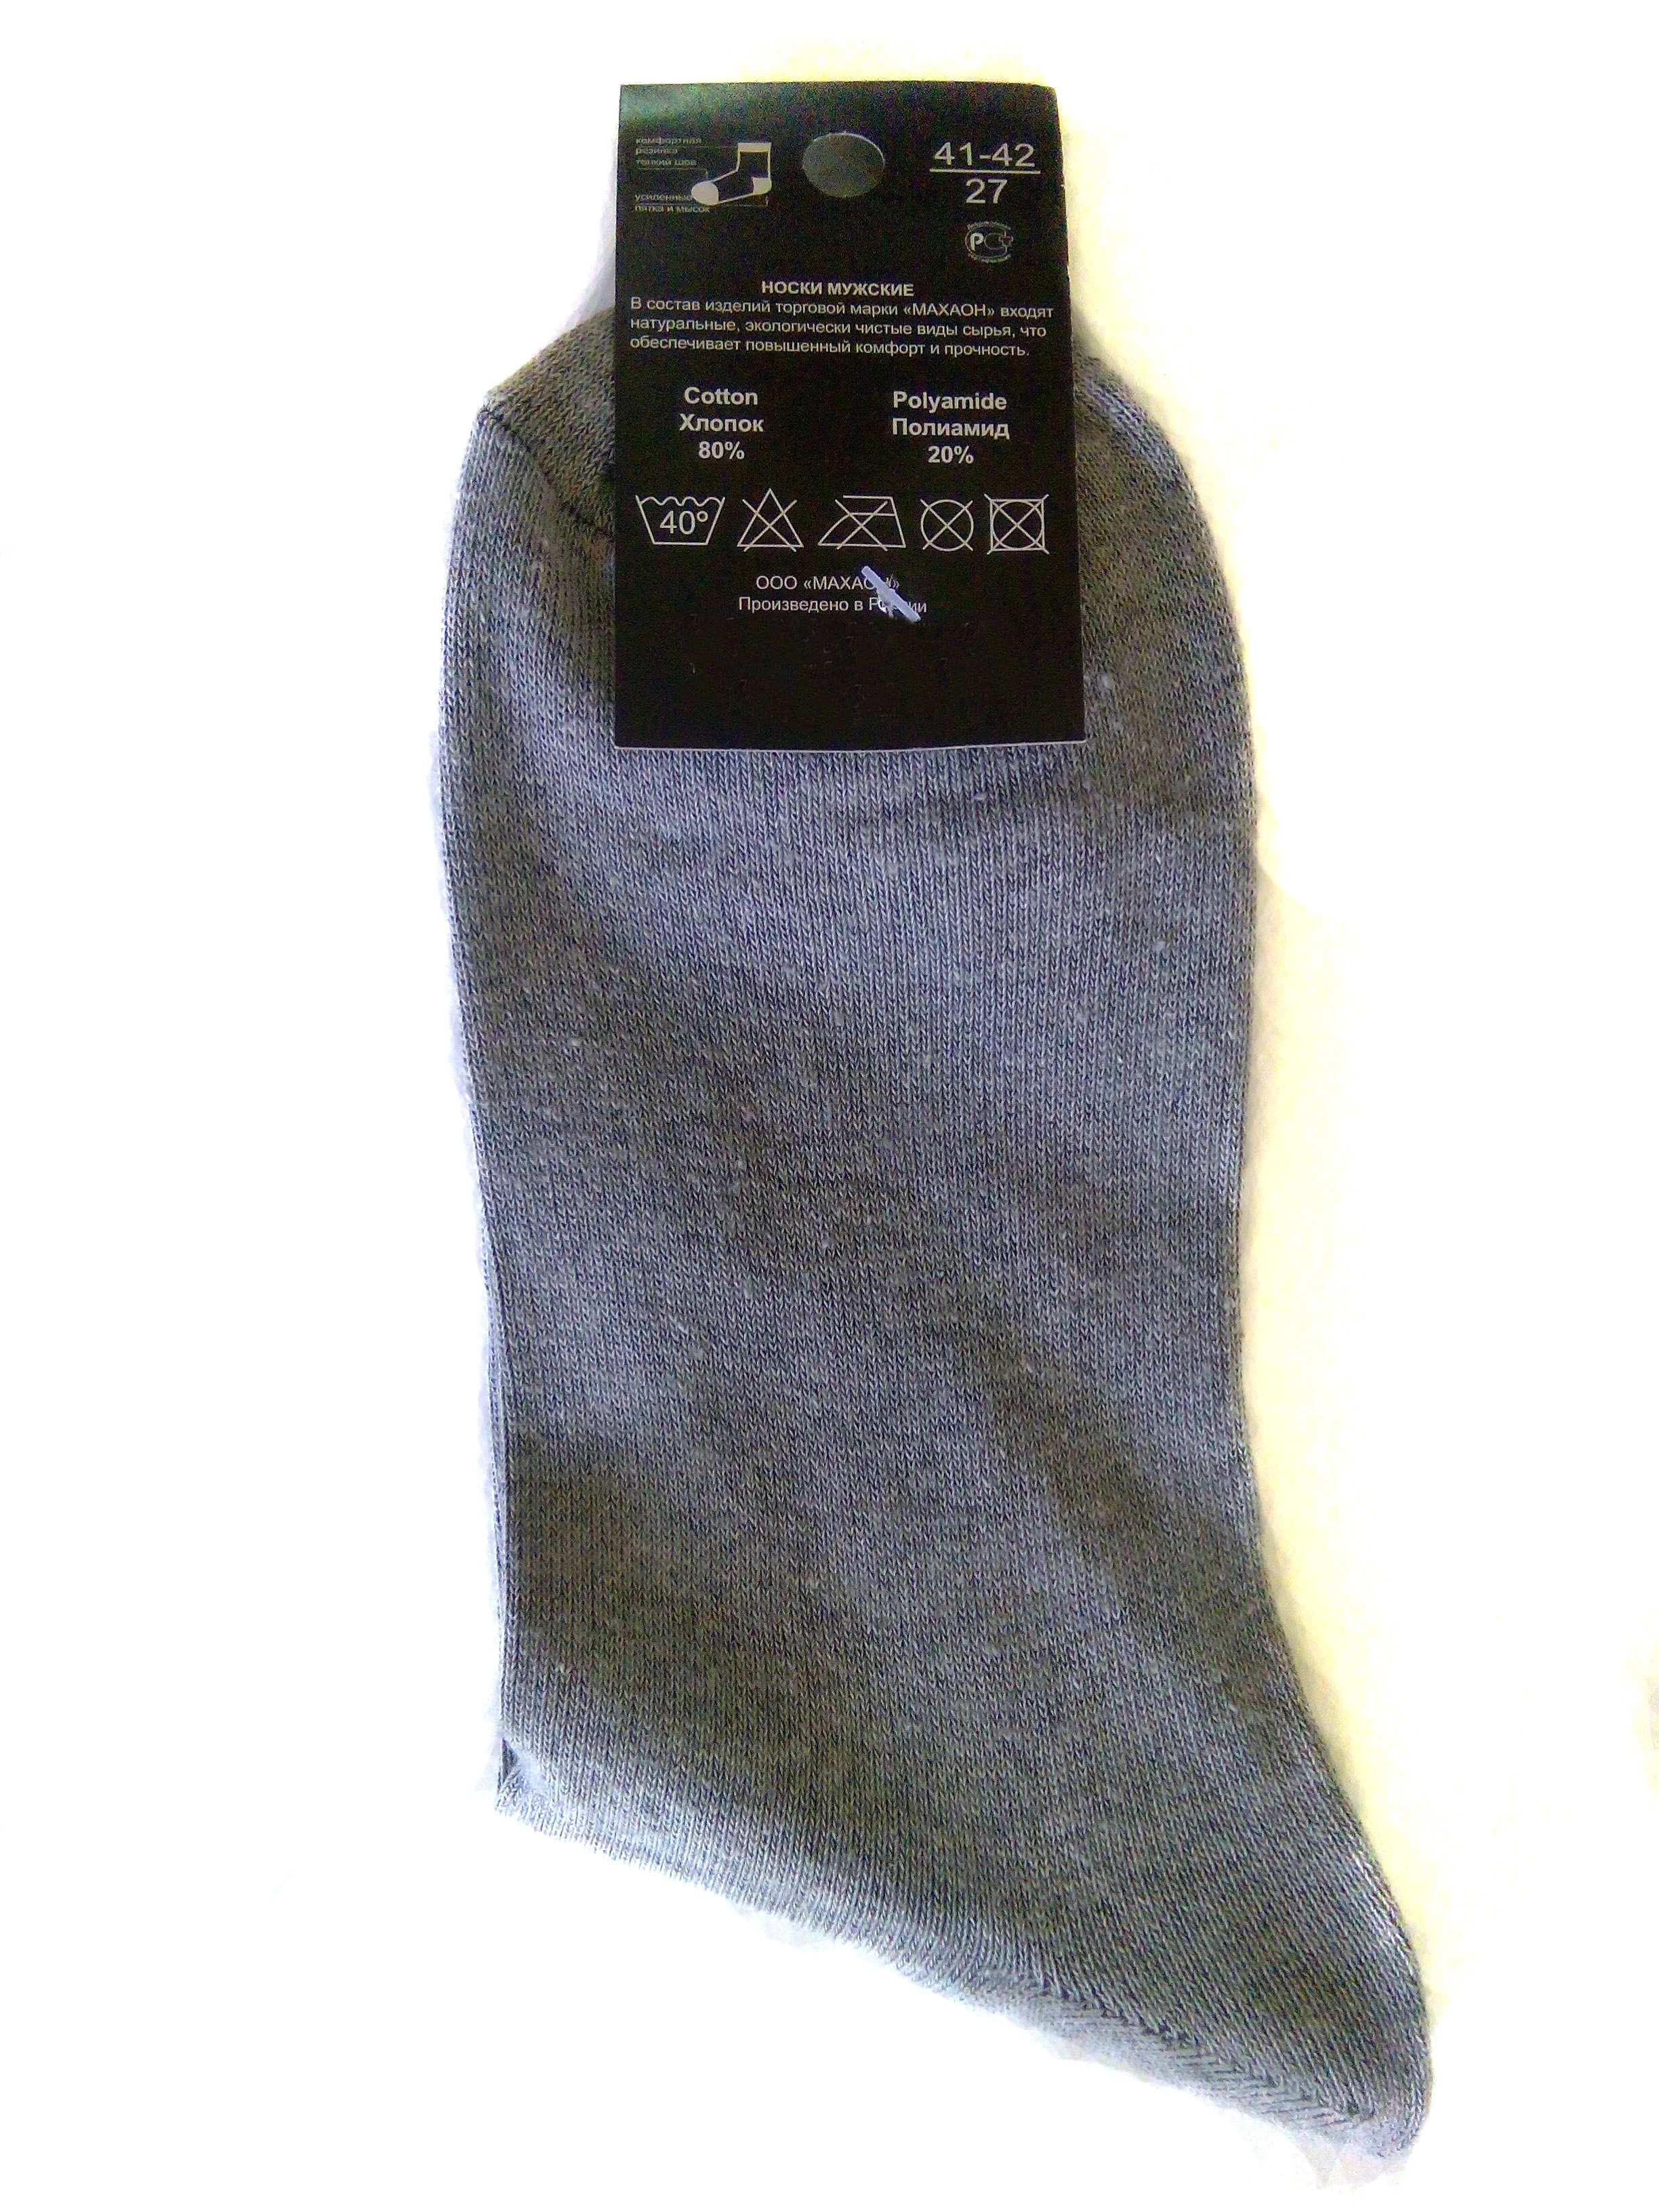 Мужские носки "Махаон" (арт.Н01-2)